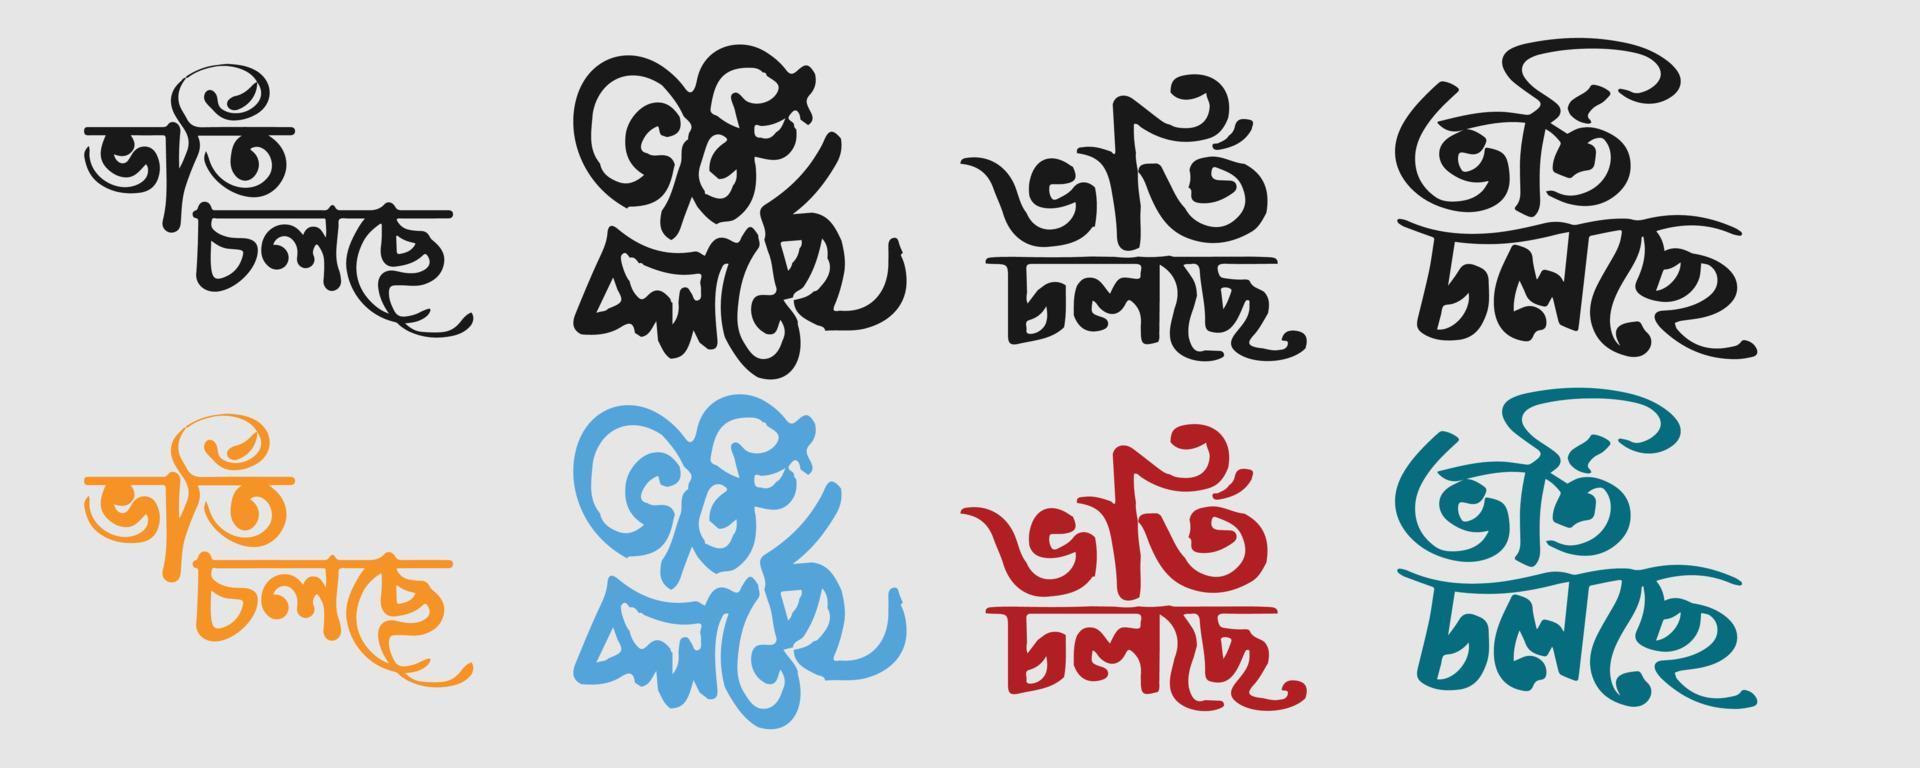 tipografia bangla e design de letras de admissão escolar acontecendo oferecendo banner, pôster, modelo. tipografia bengali do vetor vorti cholse